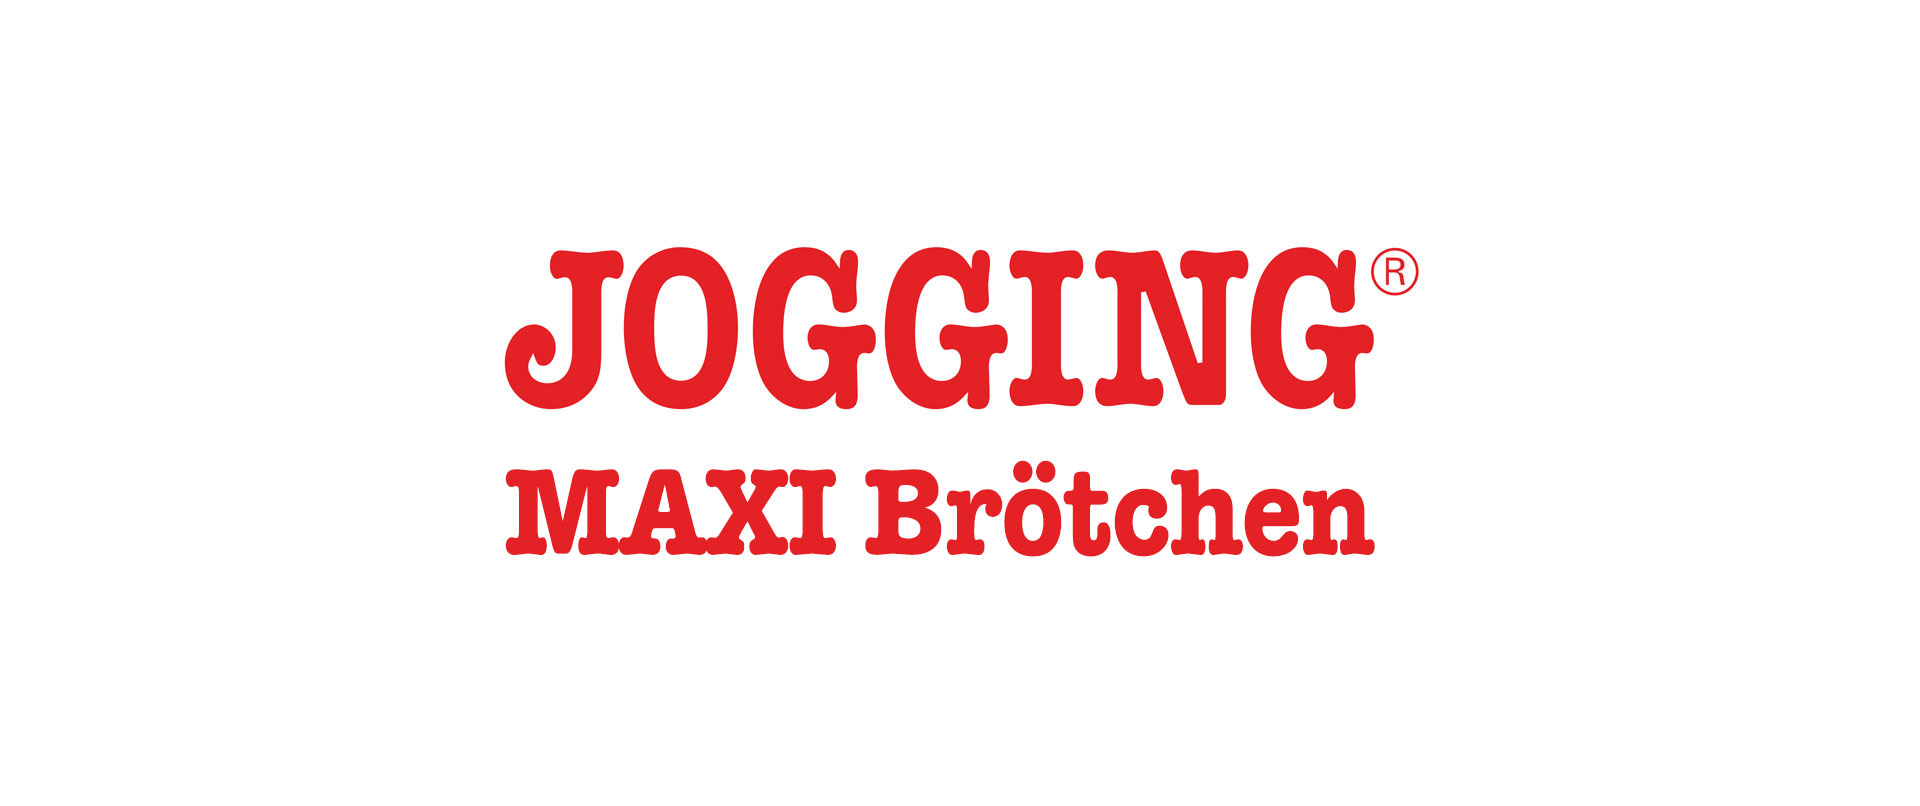 jogging-maxi